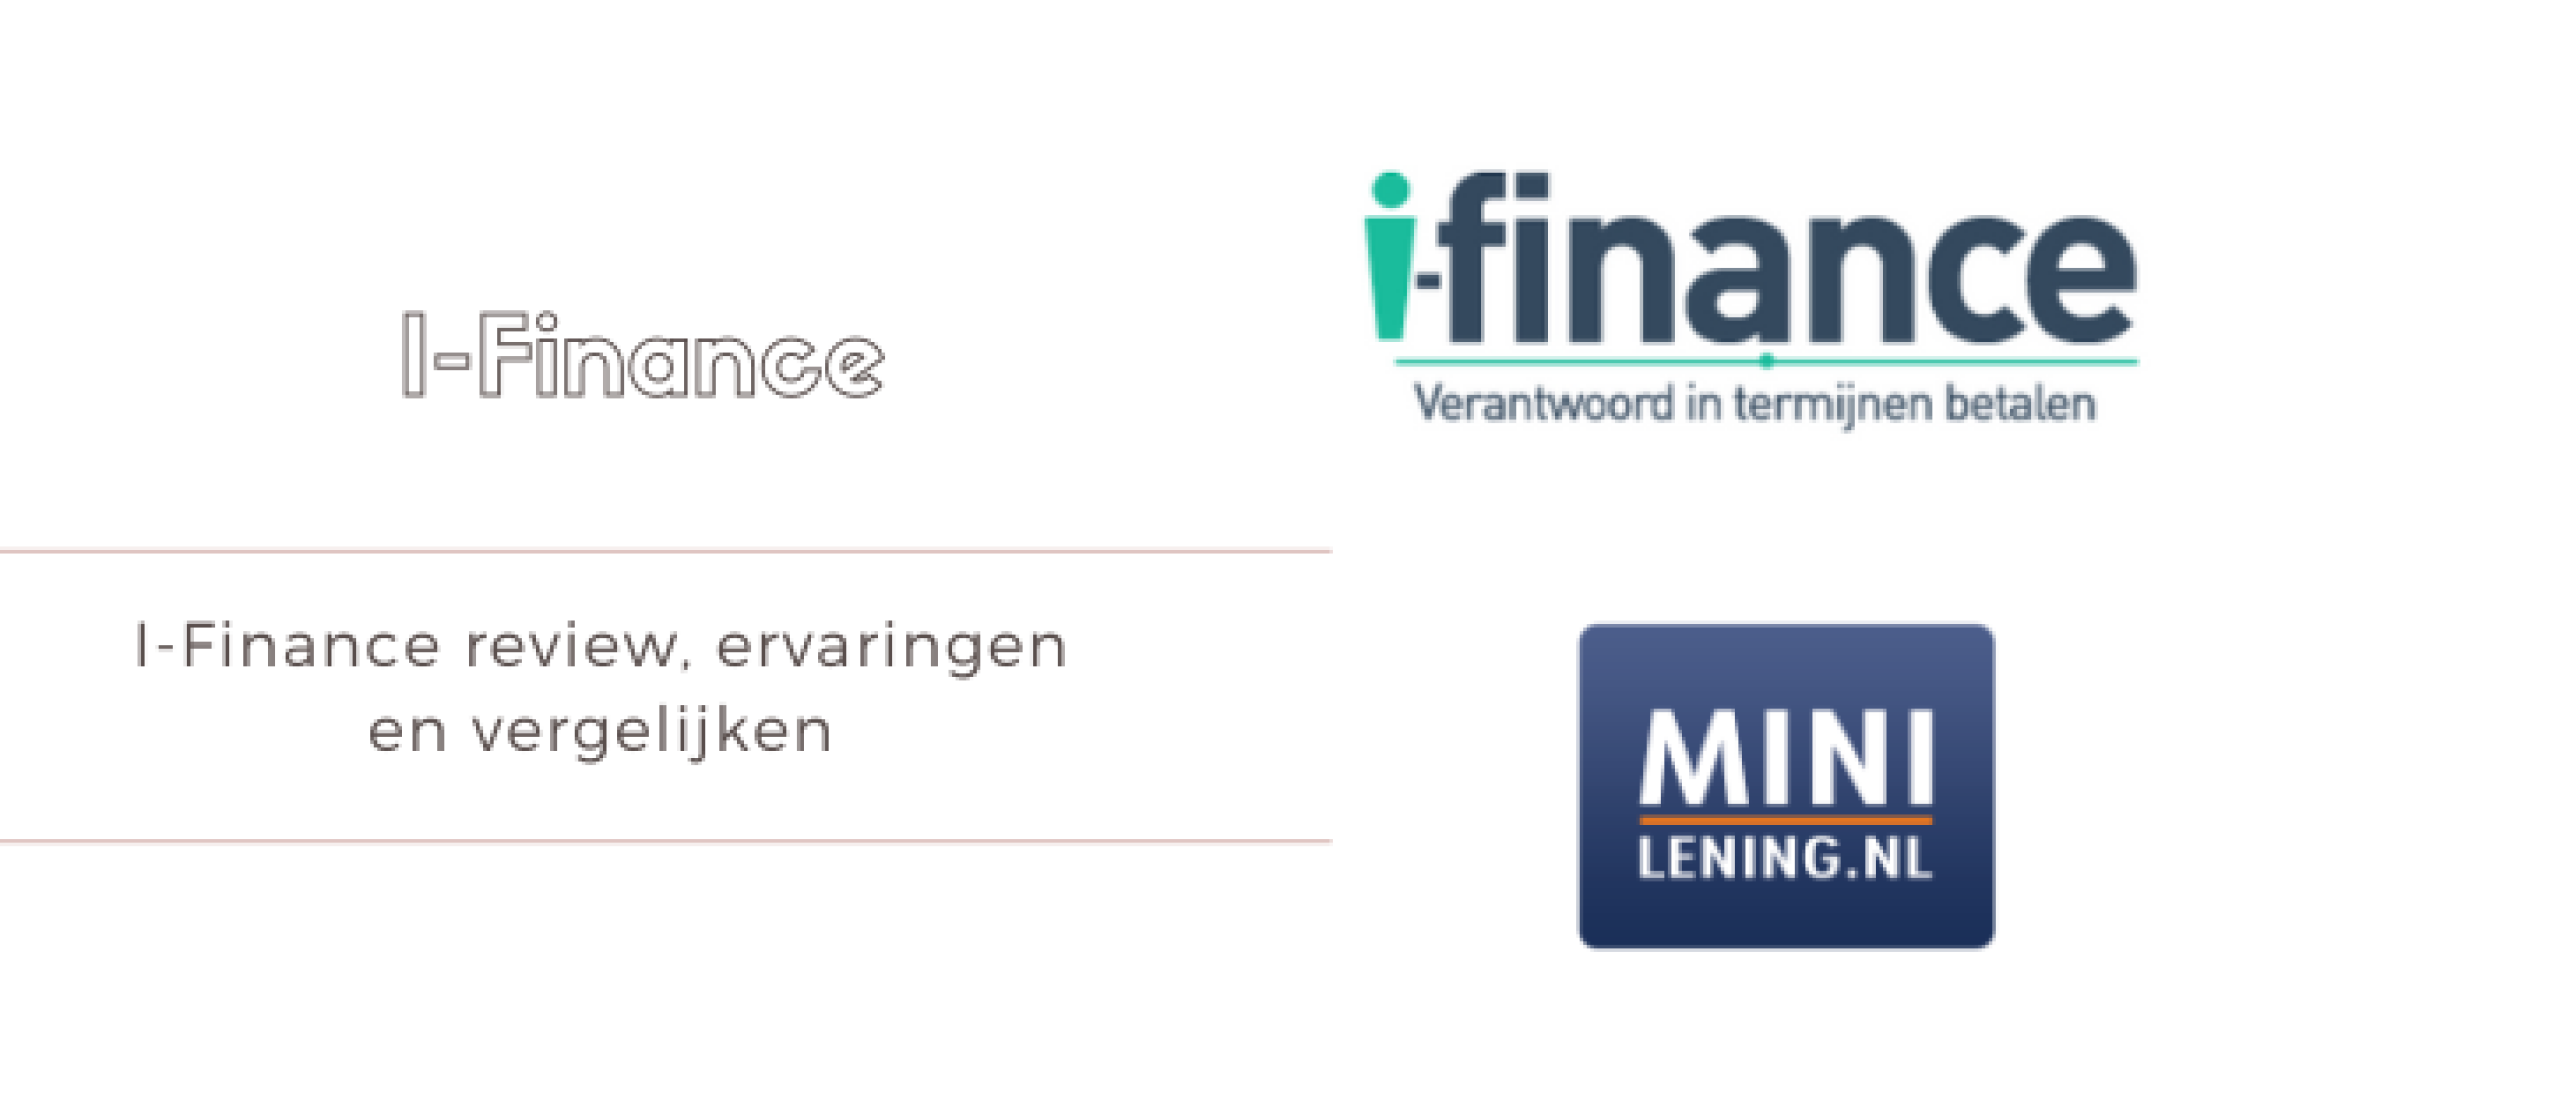 I-Finance Review en Ervaringen met Geld Lenen | Minilening.nl